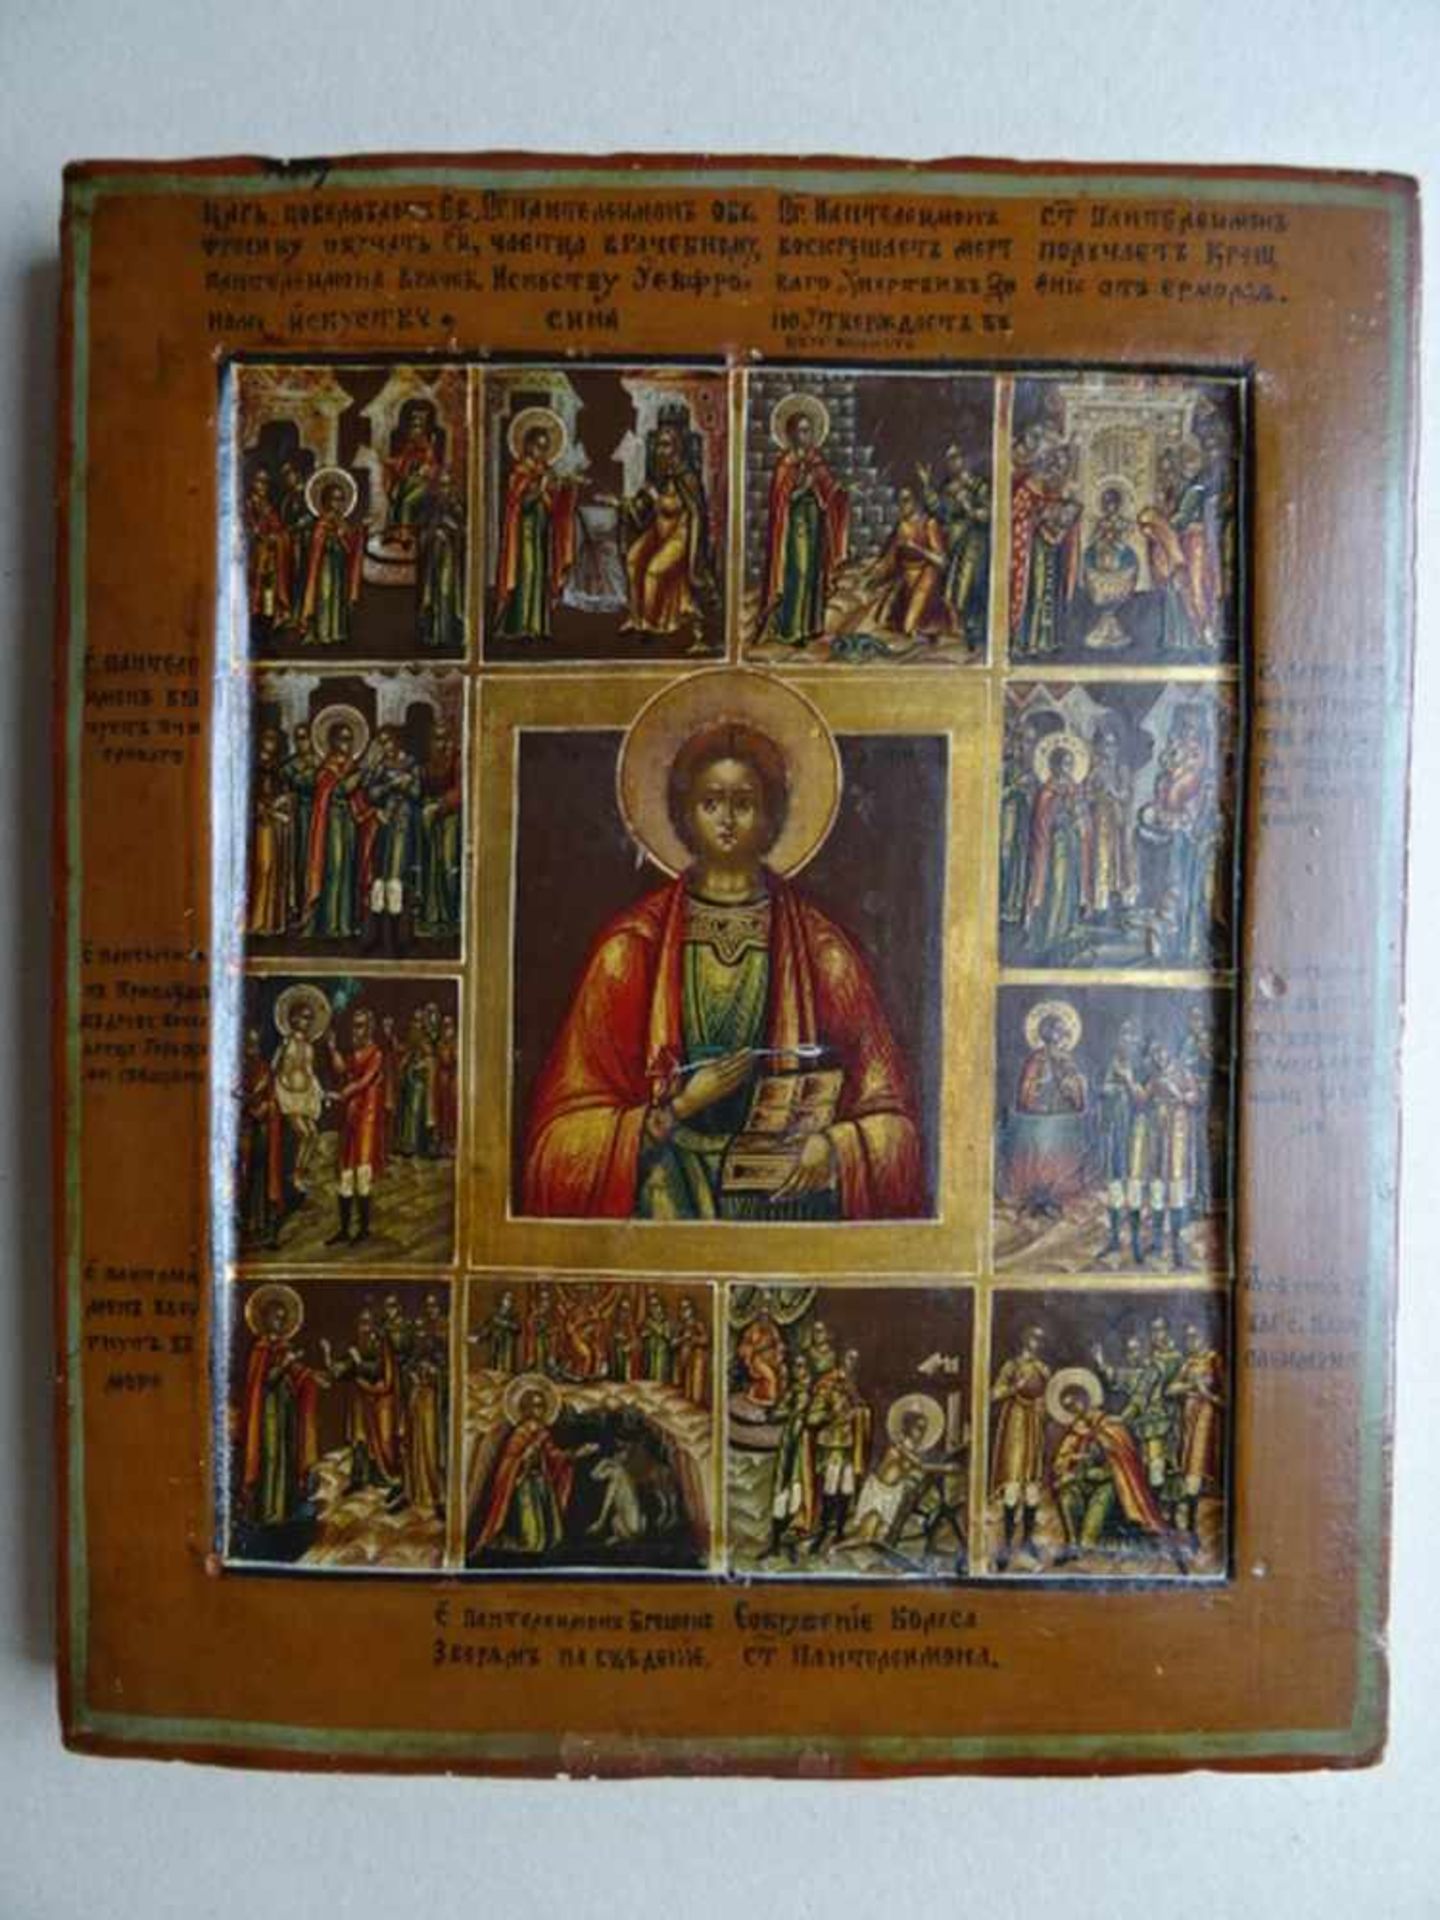 Ikonen.-Martyrium des heiligen Bartholomäus. Tempera und Gold auf Holz. Zentral-Russland, um 1850. - Bild 2 aus 4